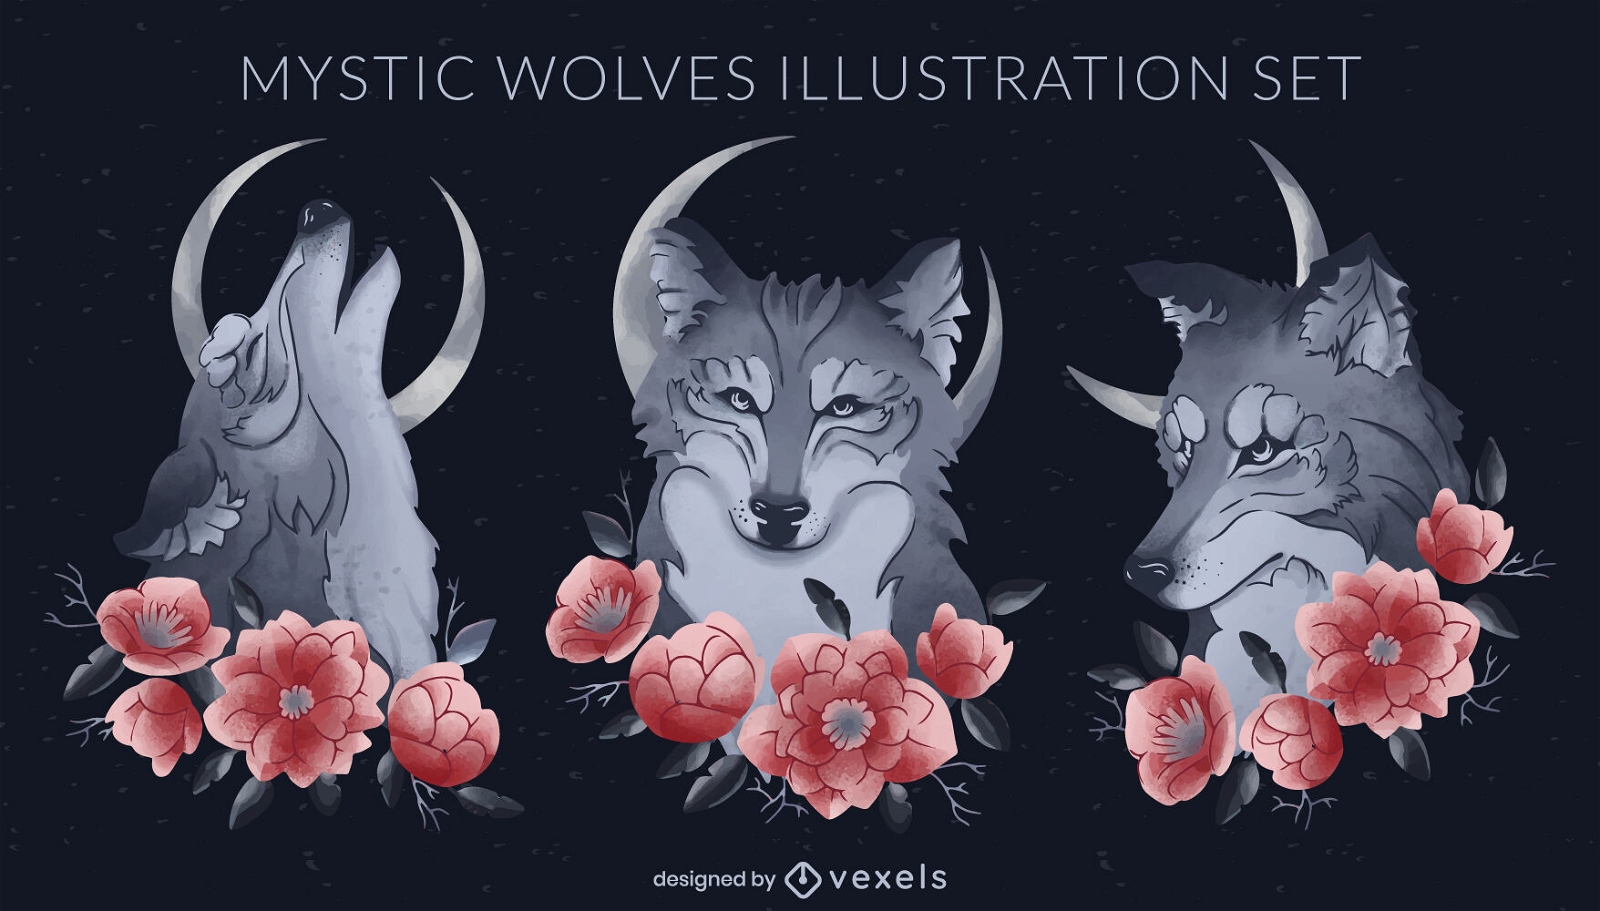 Mystic wolves illustration set